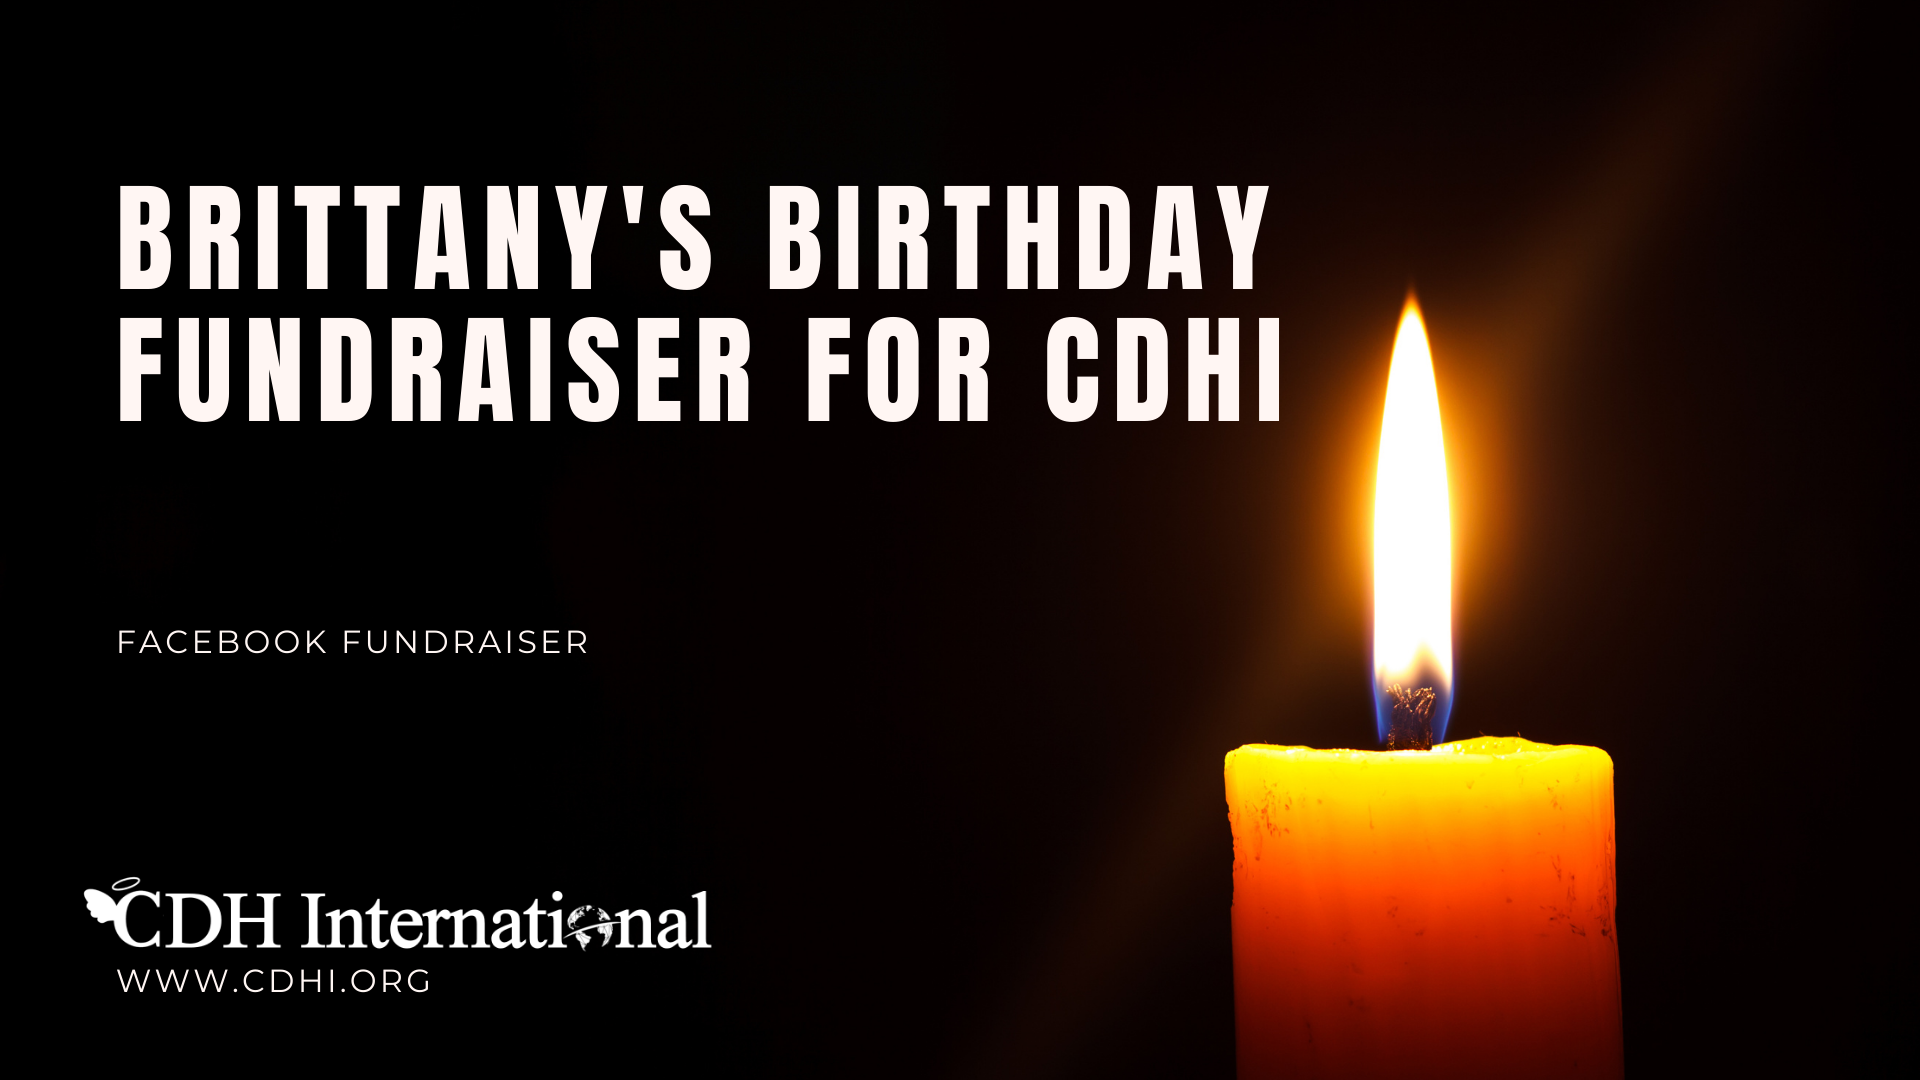 Jill’s Birthday Fundraiser for CDHi in memory of Kayden